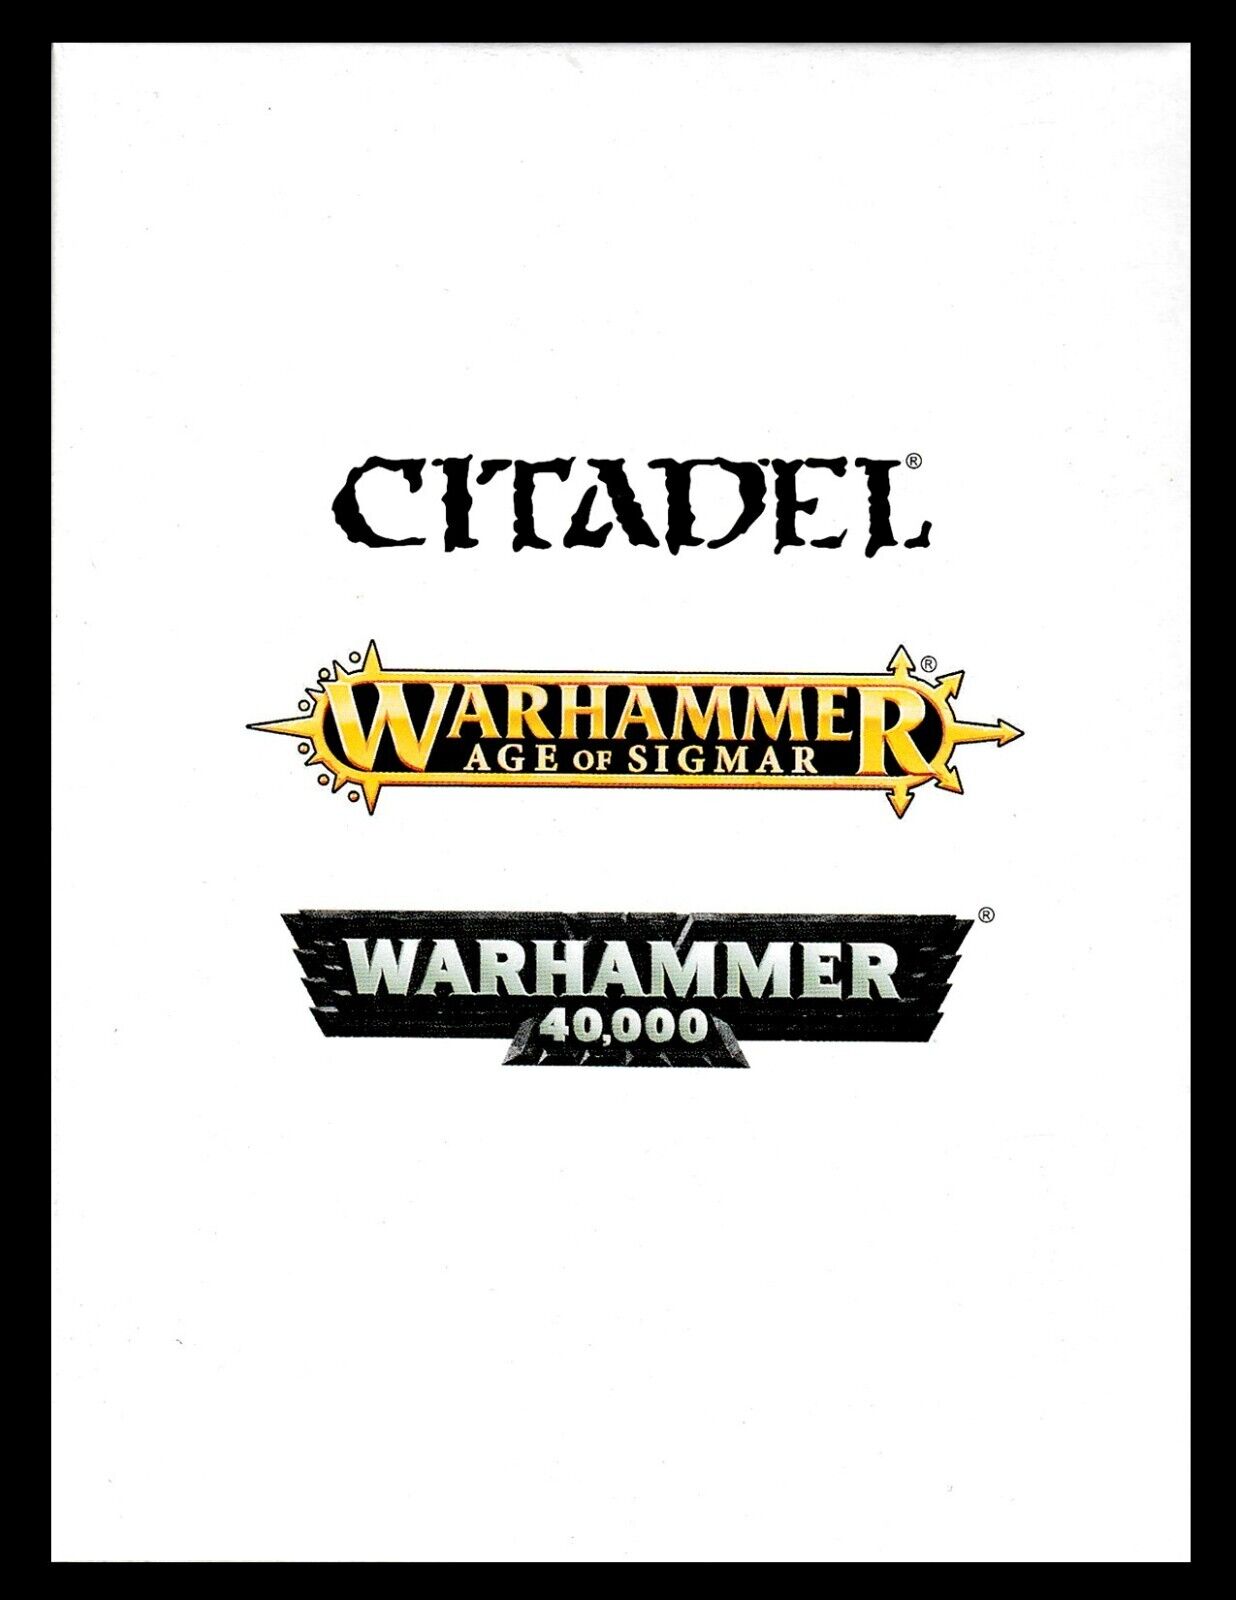 Eldar Support Weapon Aeldari Craftworlds Warhammer 40K NIB!              WBGames